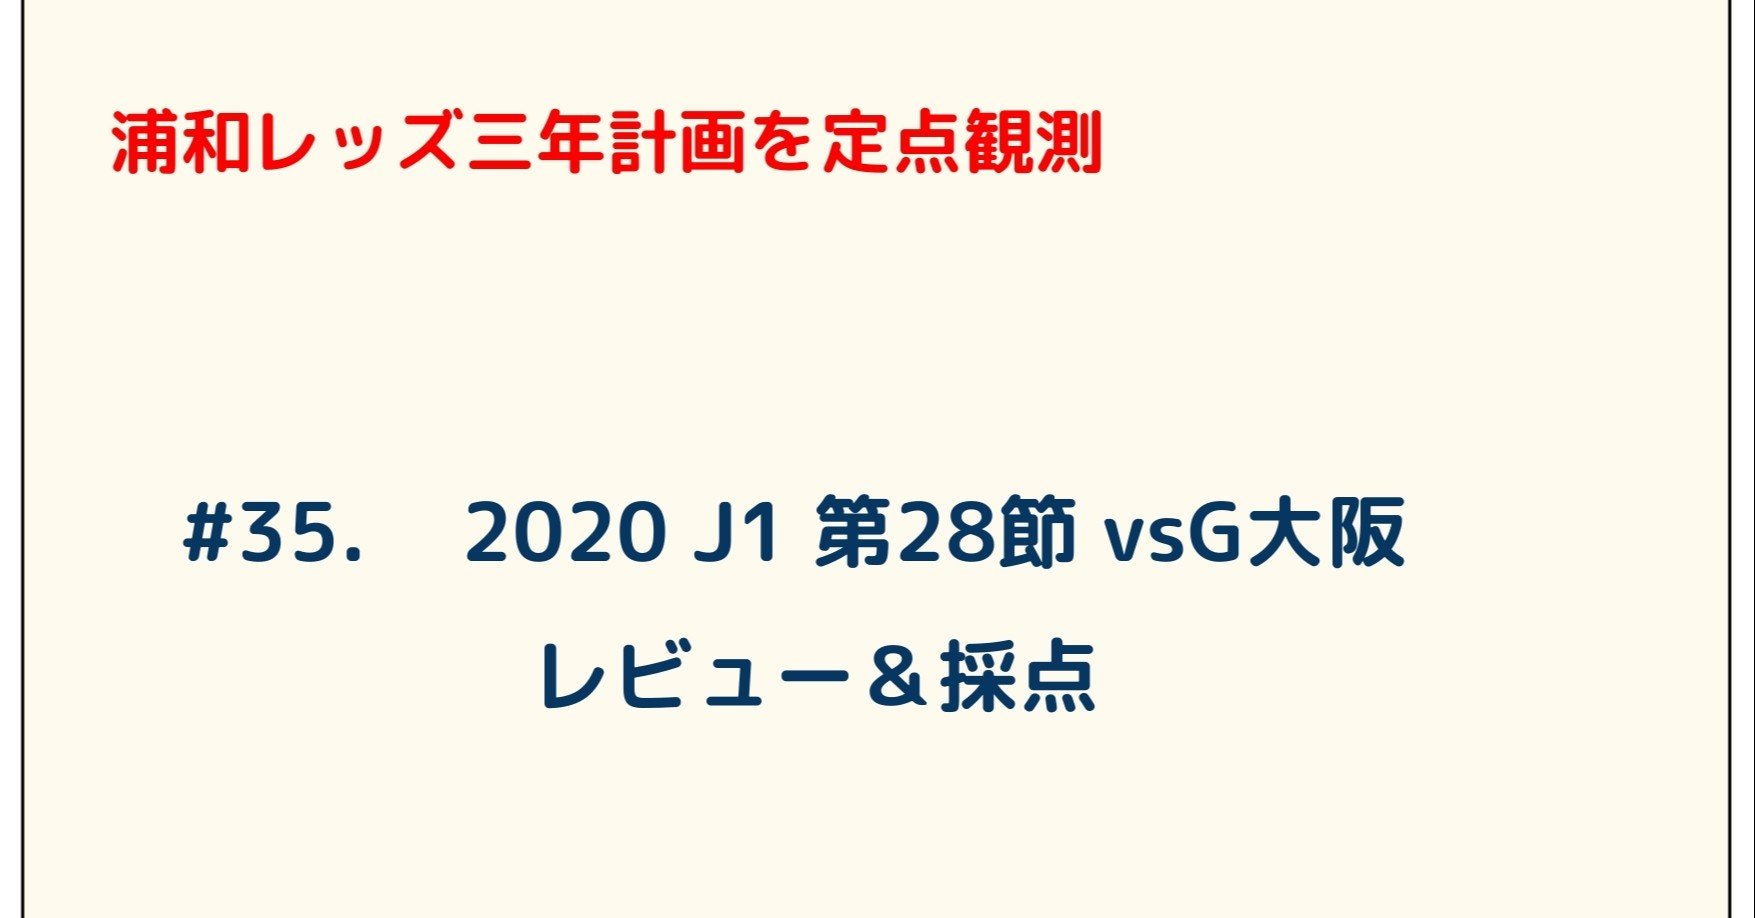 浦和レッズ三年計画を定点観測 35 J1 第28節 Vsg大阪 レビュー 採点 ゆうき Y2aa21 Note